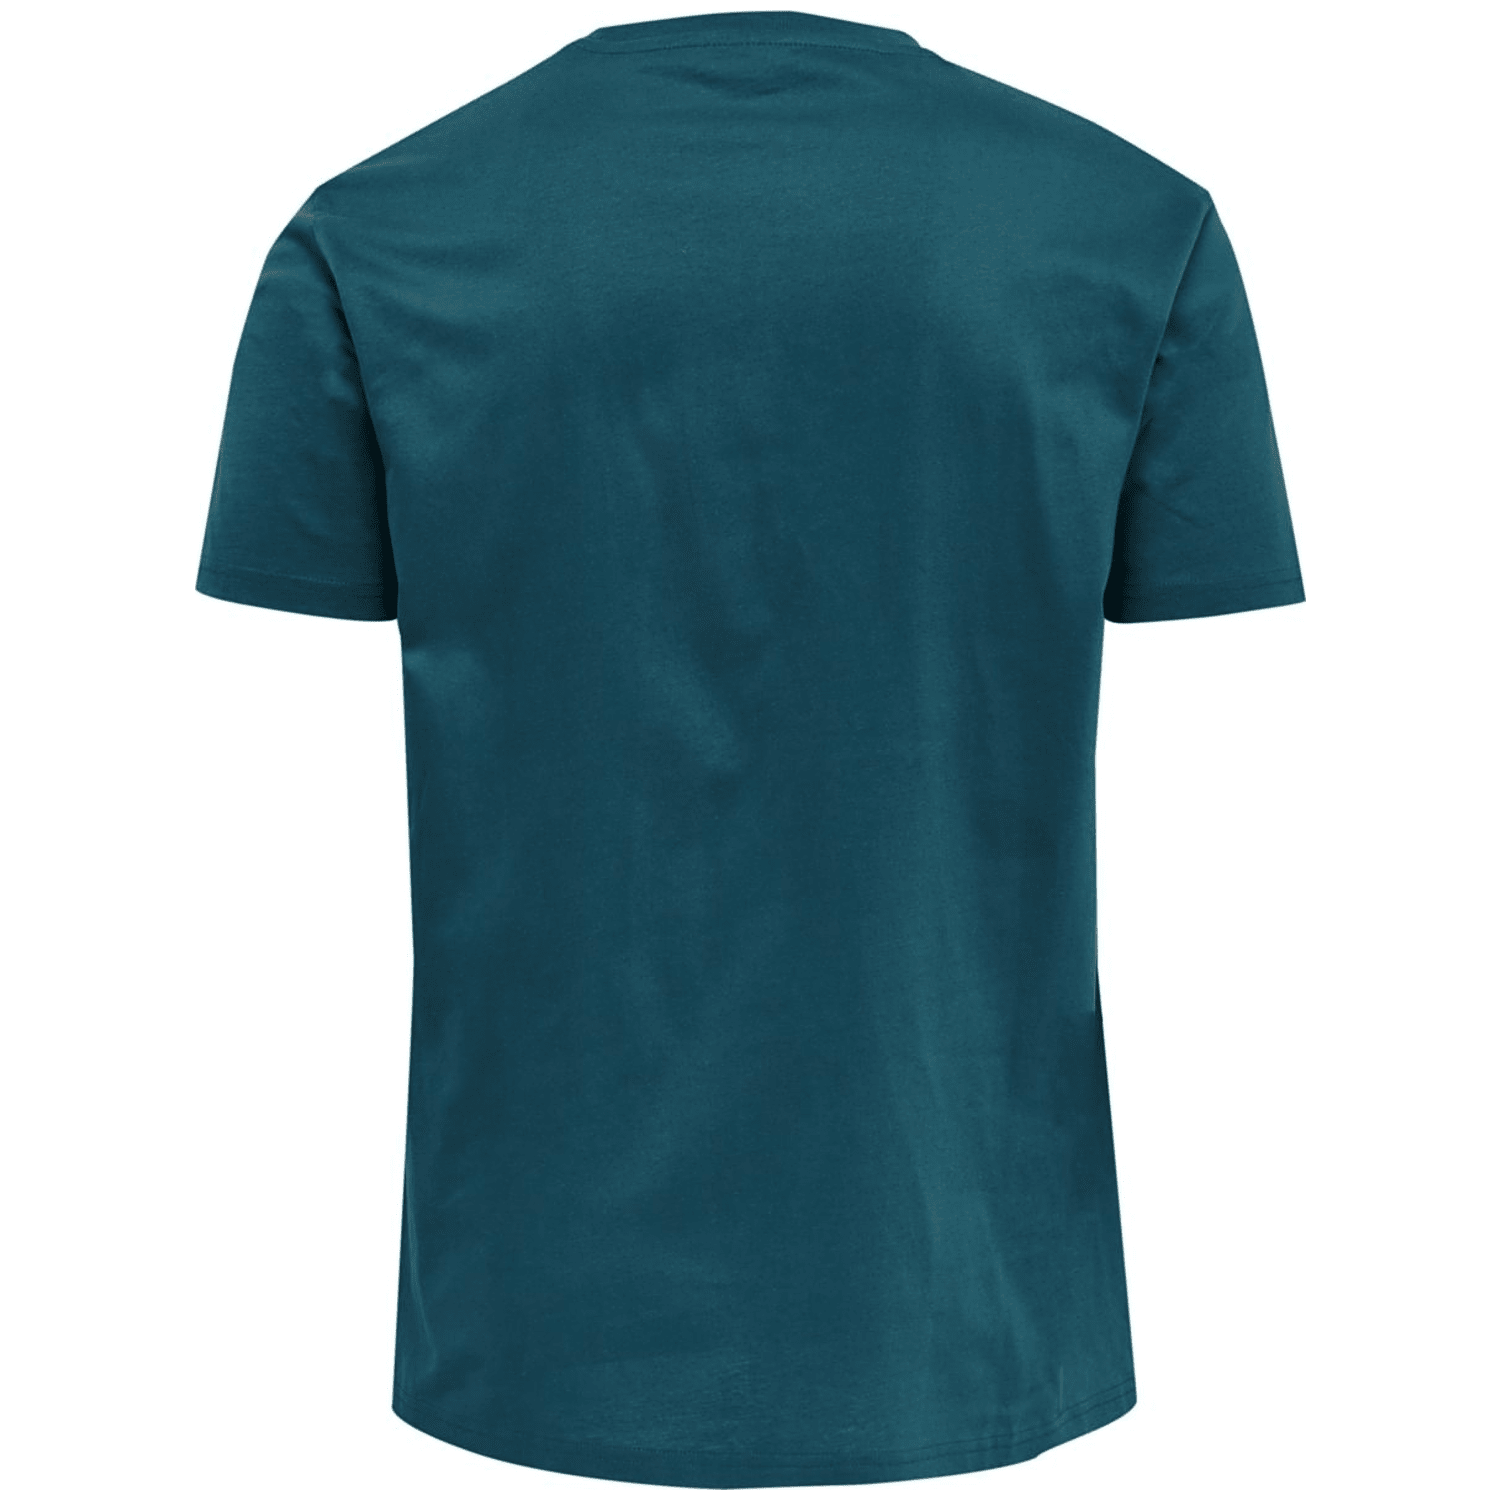 Hummel GG12 Herren T-Shirt